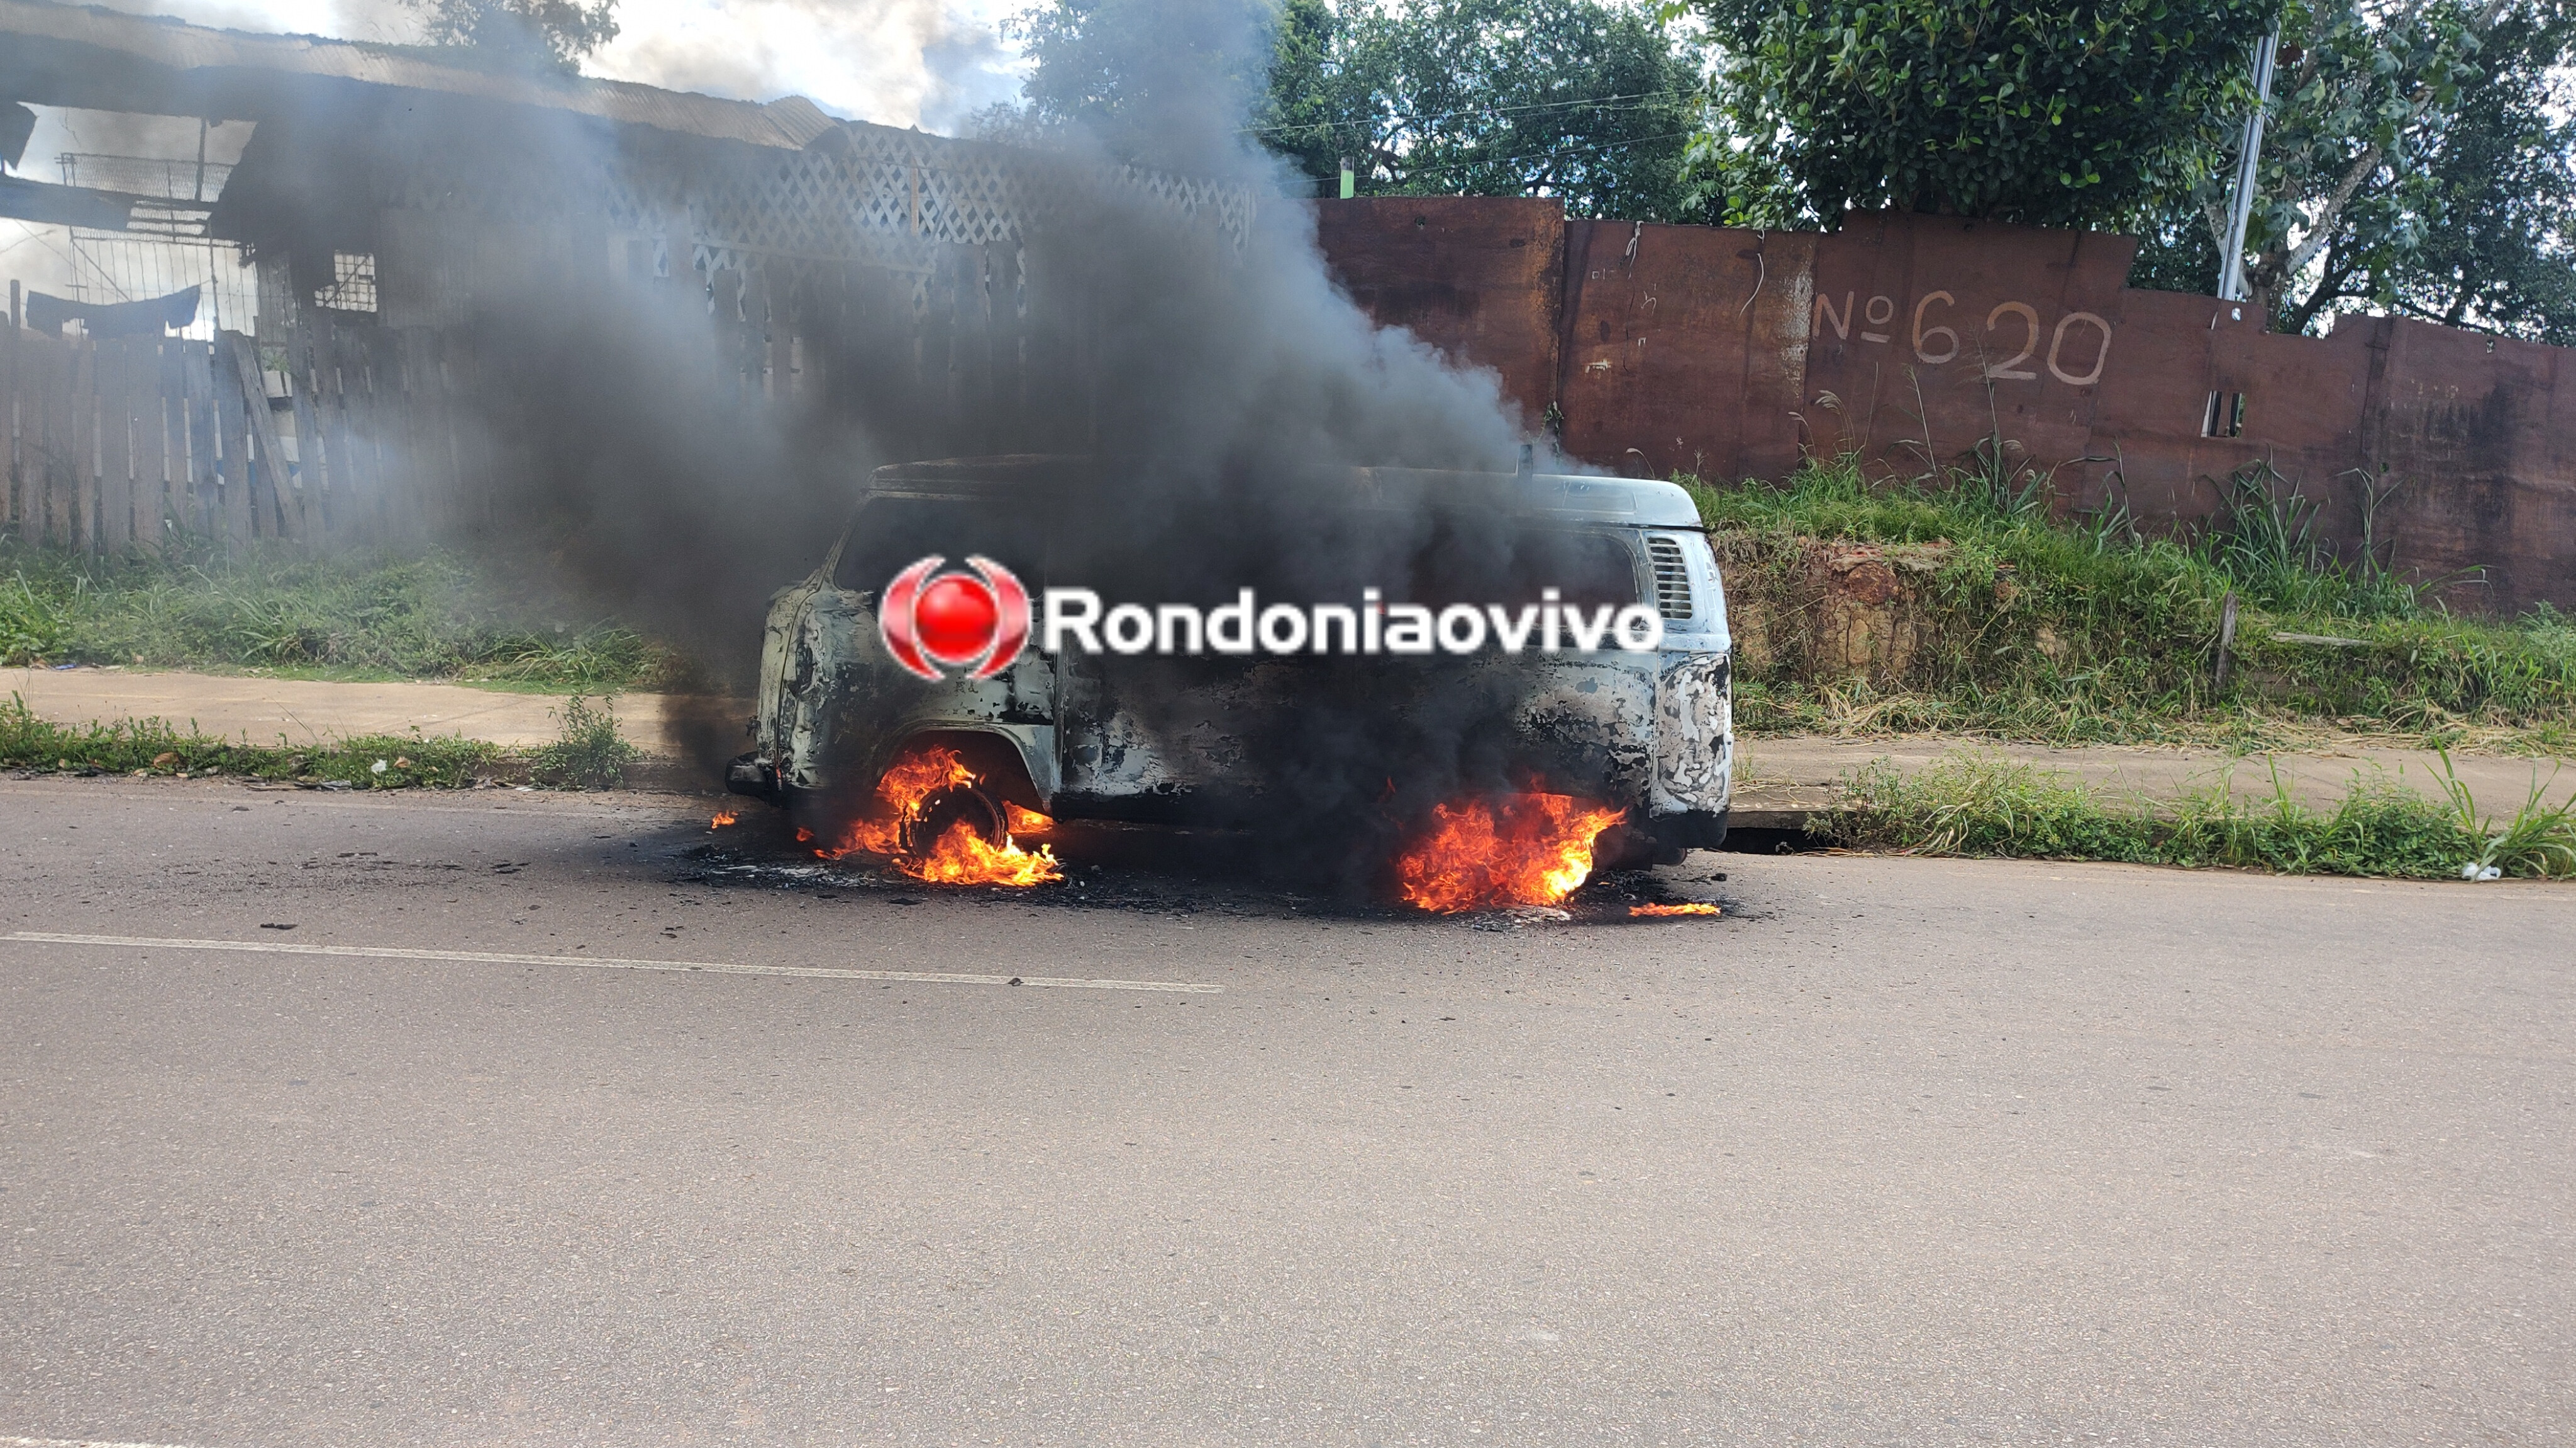 URGENTE: Kombi é totalmente destruída por incêndio próximo ao viaduto 